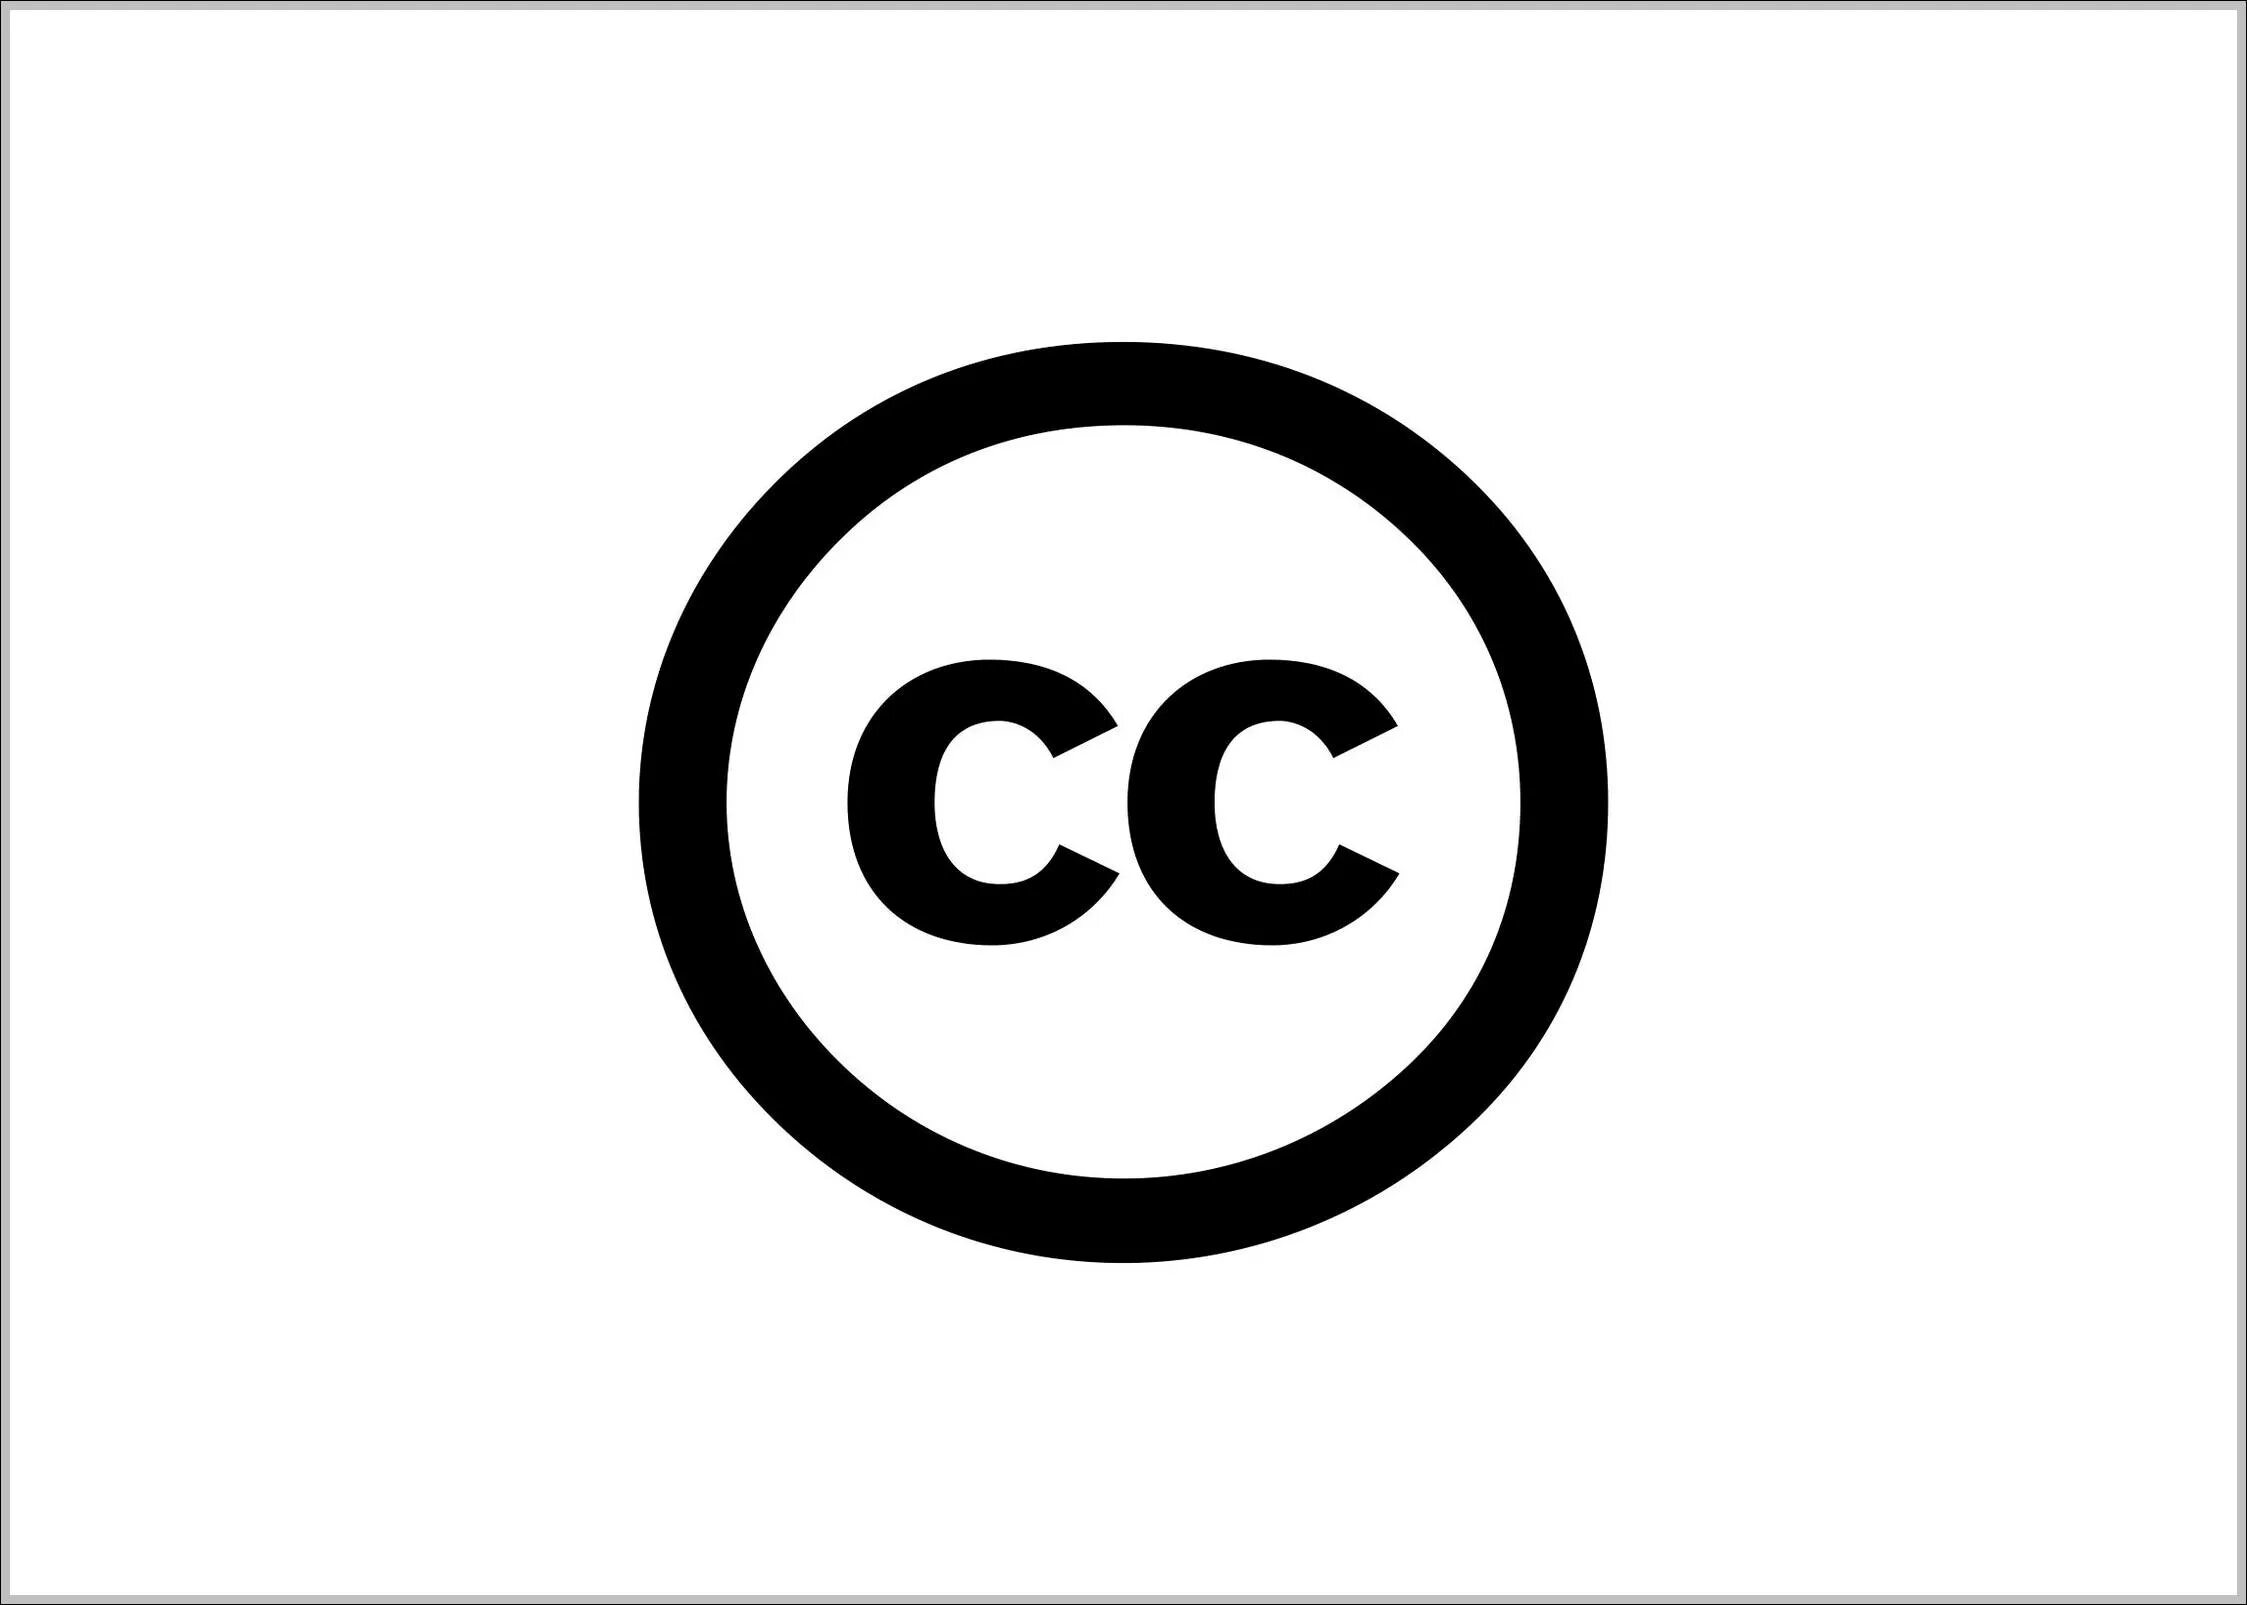 Creative commons license. Creative Commons. Creative Commons логотип. Creative Commons СС. Лицензии креатив Коммонс.